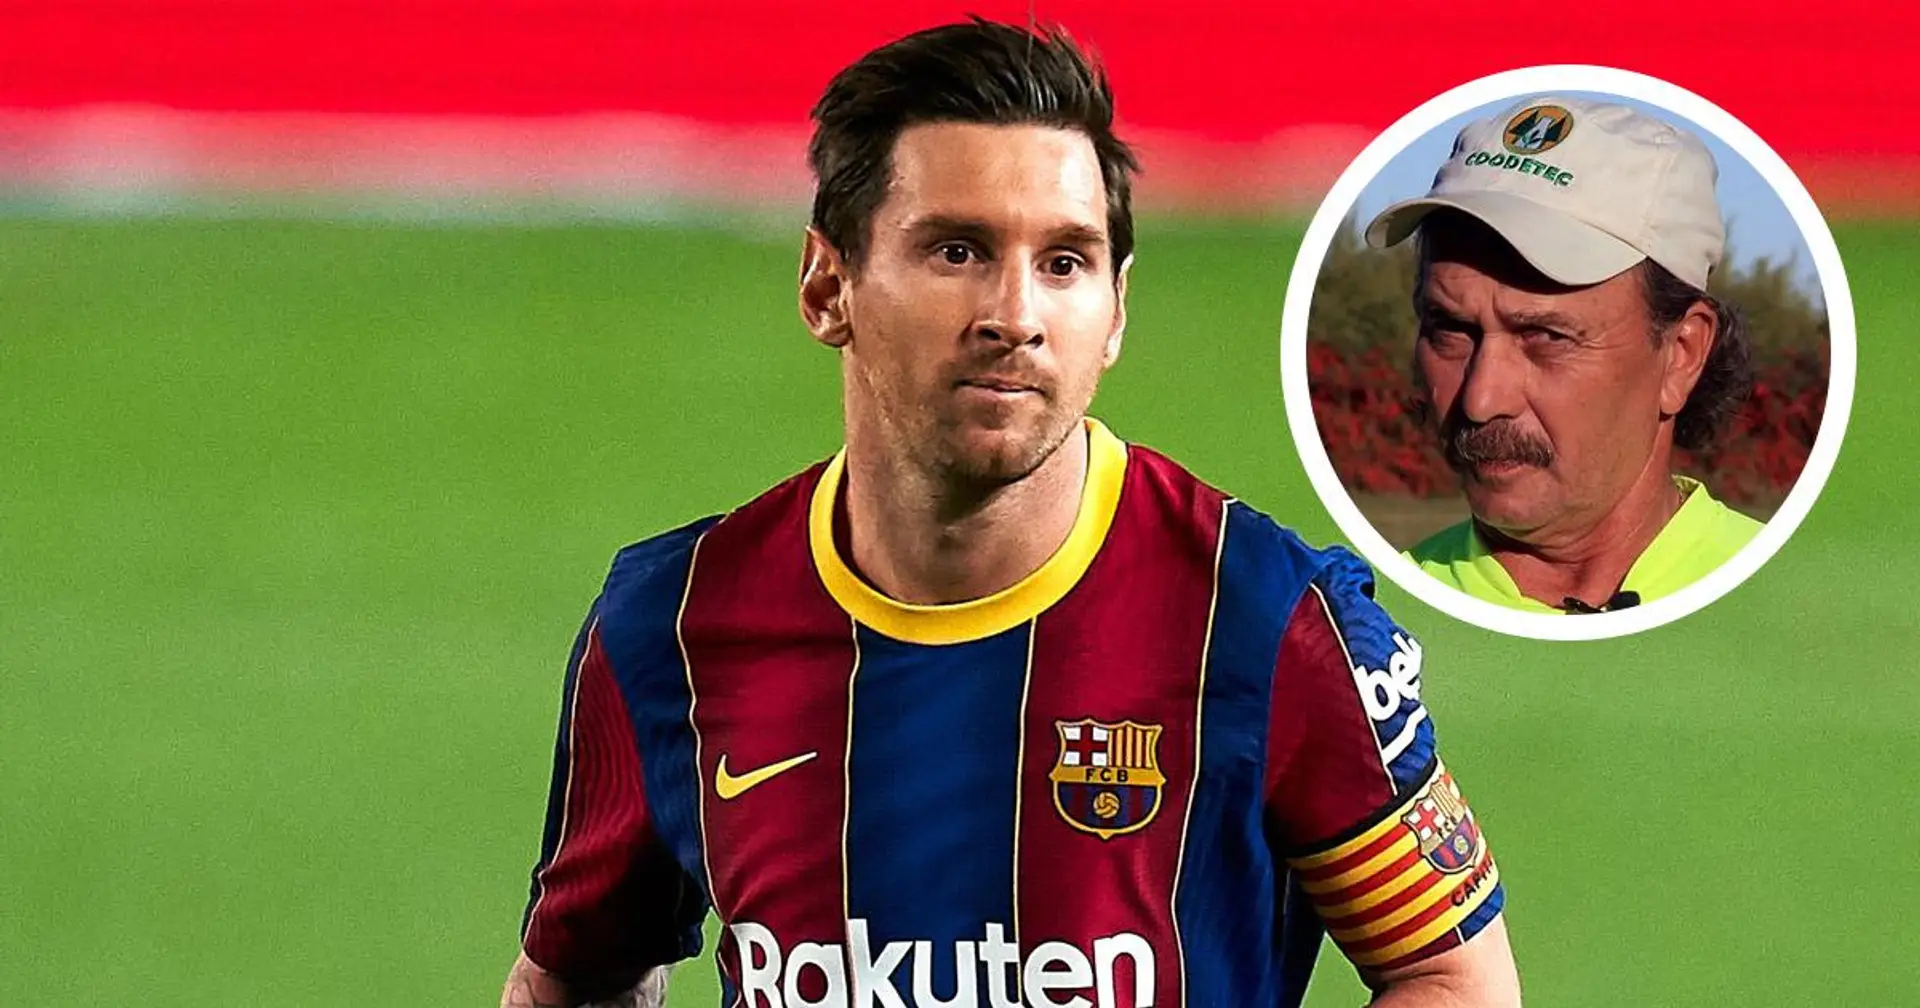 'Messi una vez regateó a todo el equipo, incluido el portero, pero no pateó el balón a la red vacía': una historia conmovedora contada por el ex entrenador de Leo